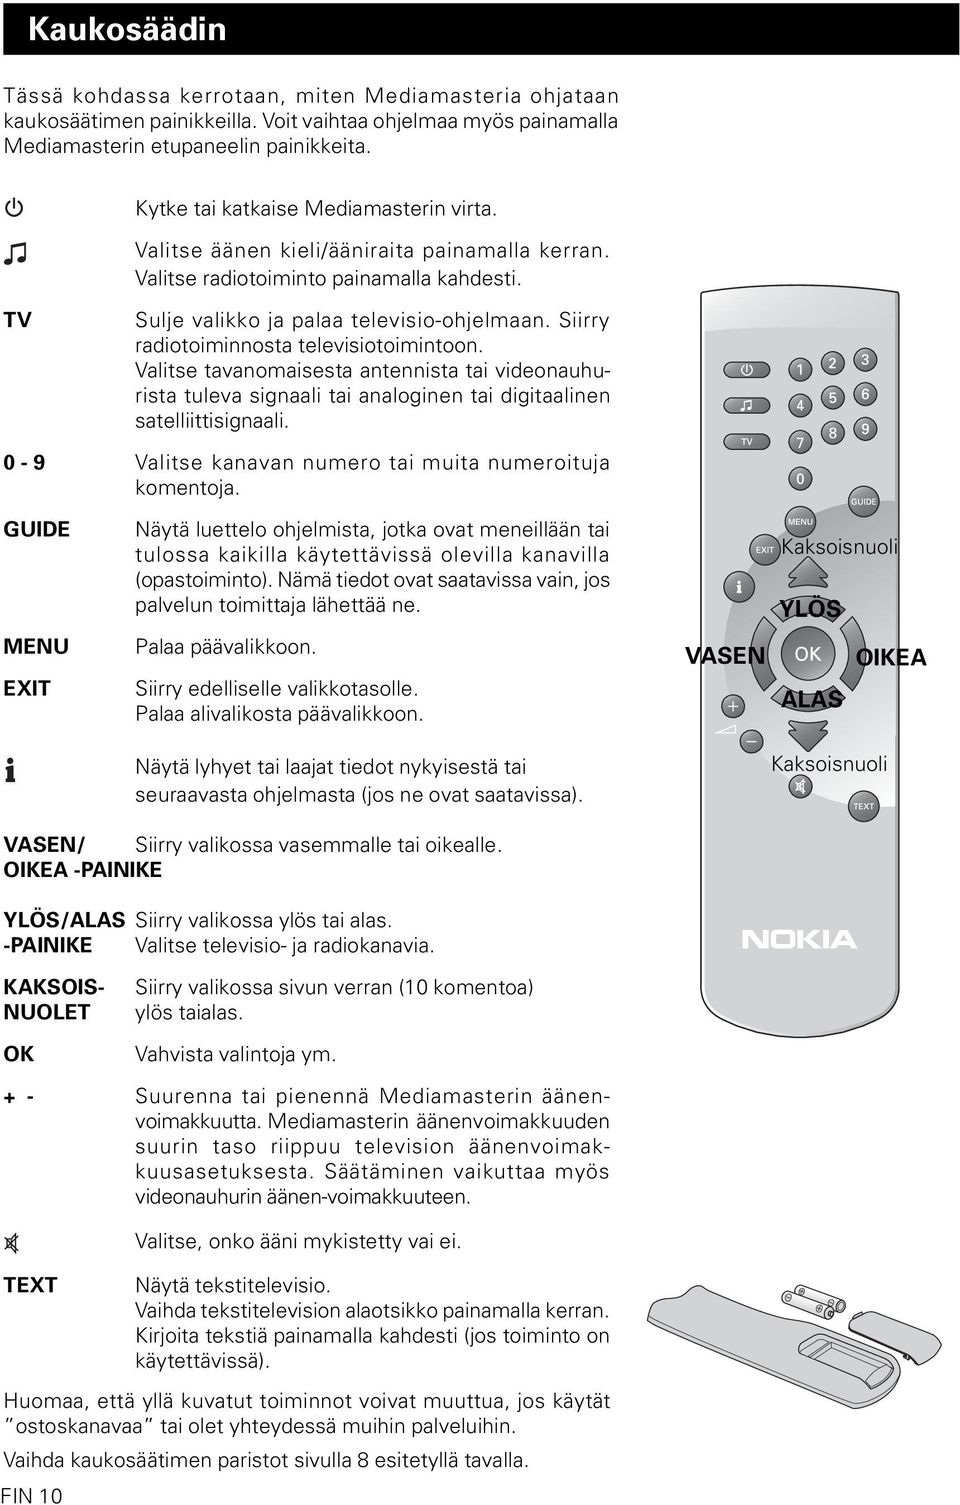 Siirry radiotoiminnosta televisiotoimintoon. Valitse tavanomaisesta antennista tai videonauhurista tuleva signaali tai analoginen tai digitaalinen satelliittisignaali.